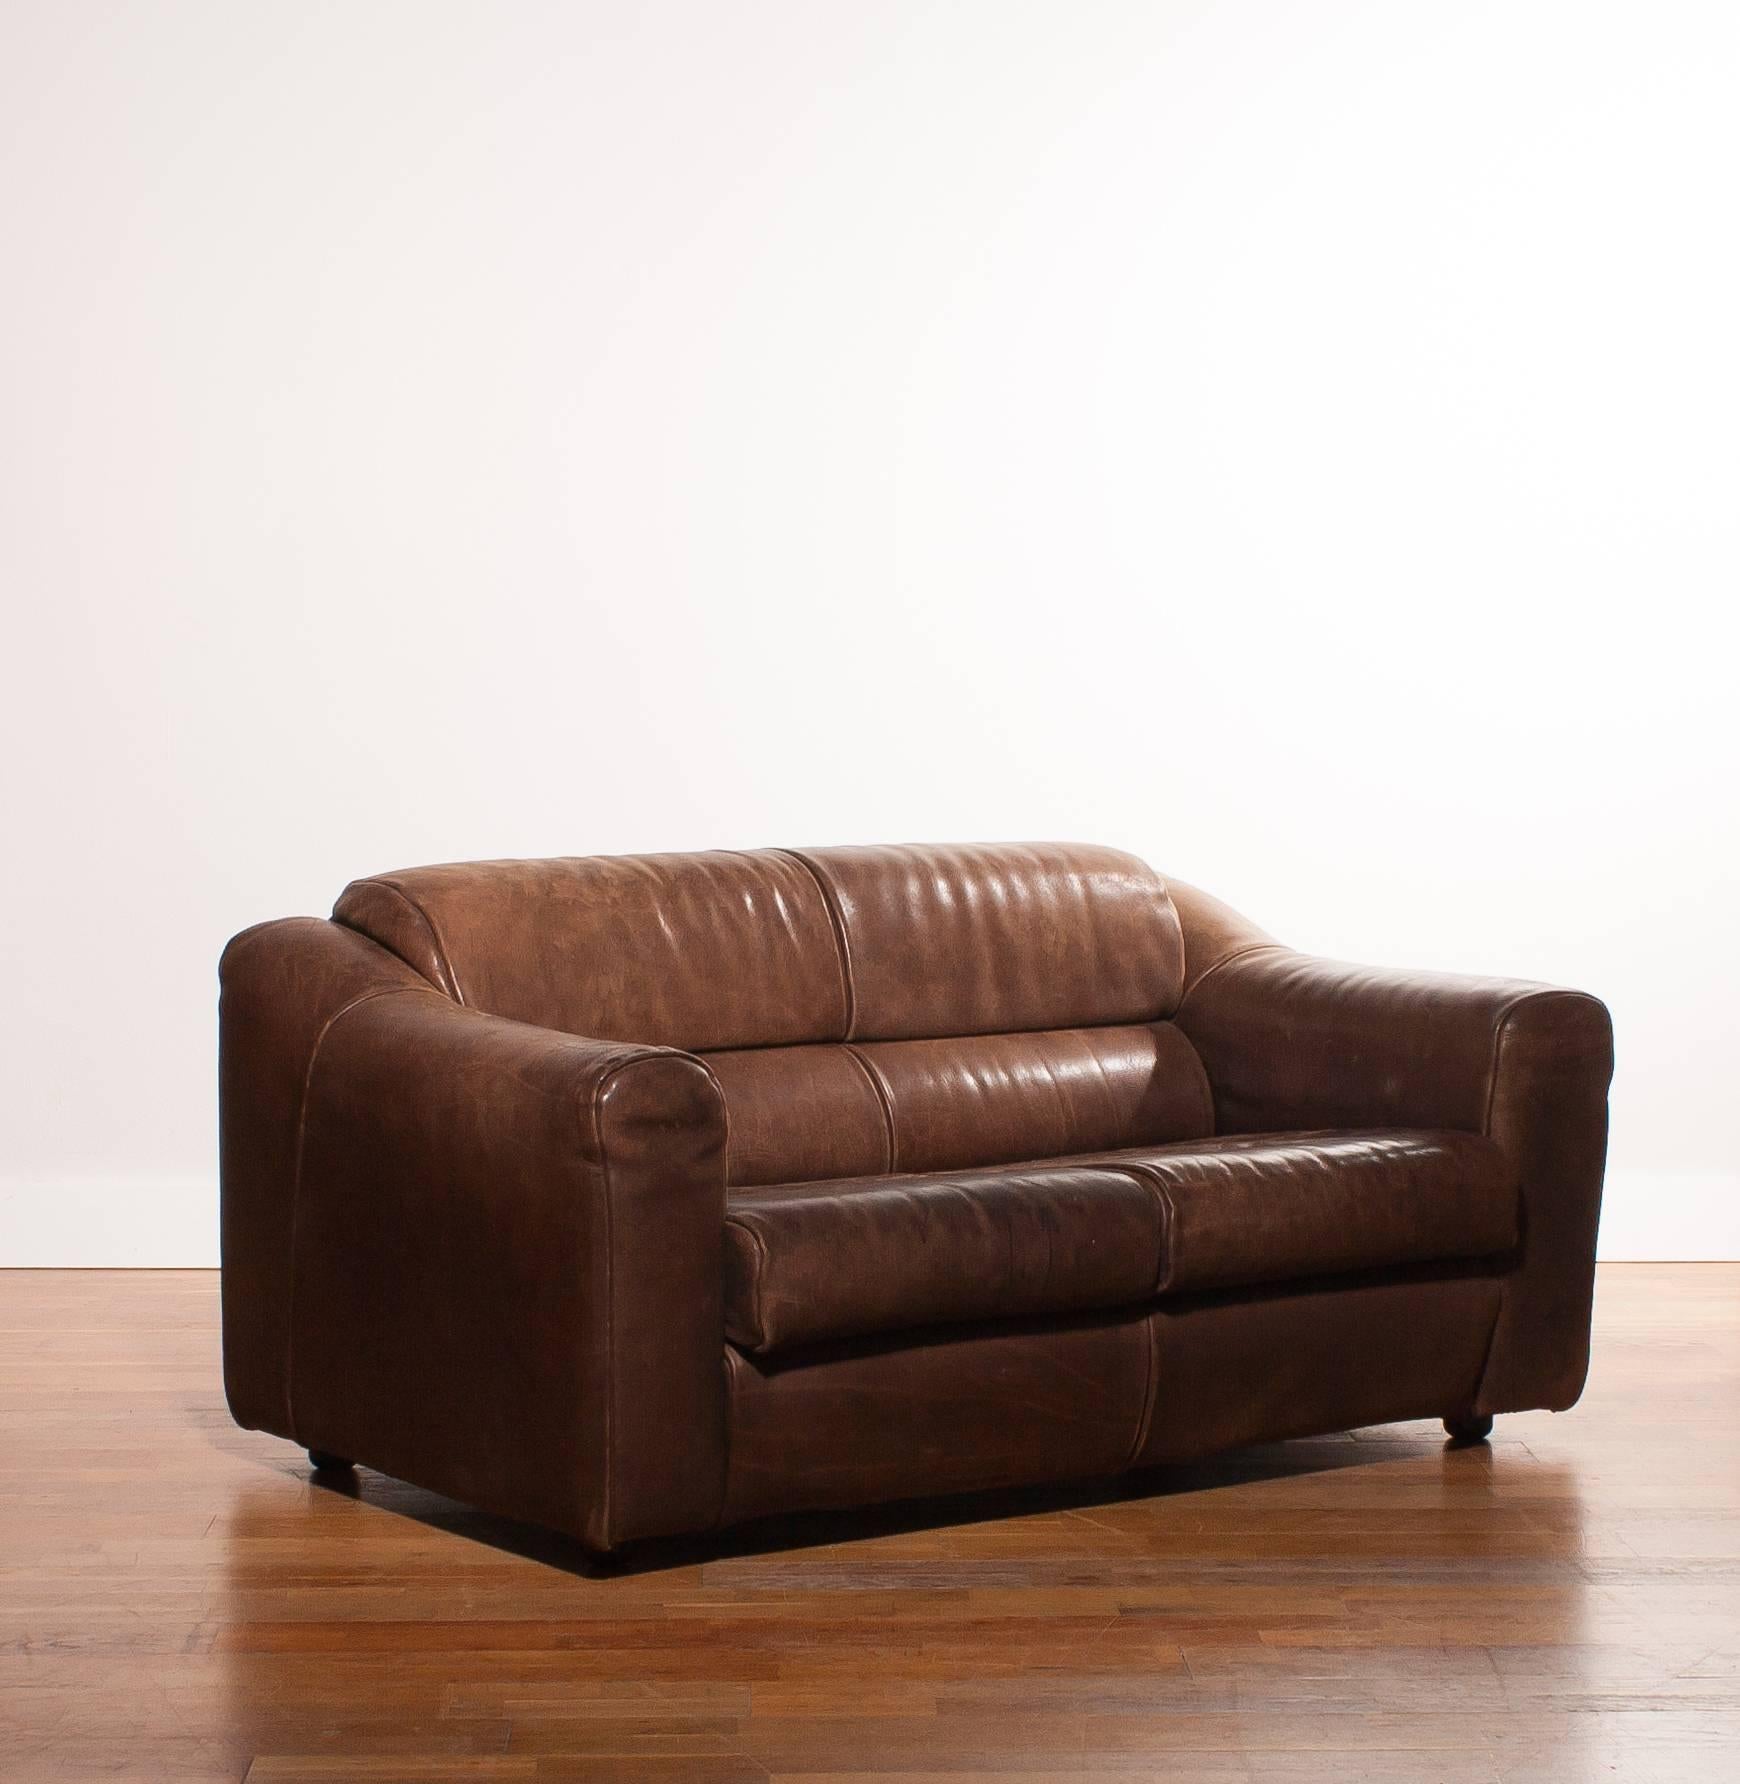 1970s, Buffalo Leather Two-Seat Sofa 3